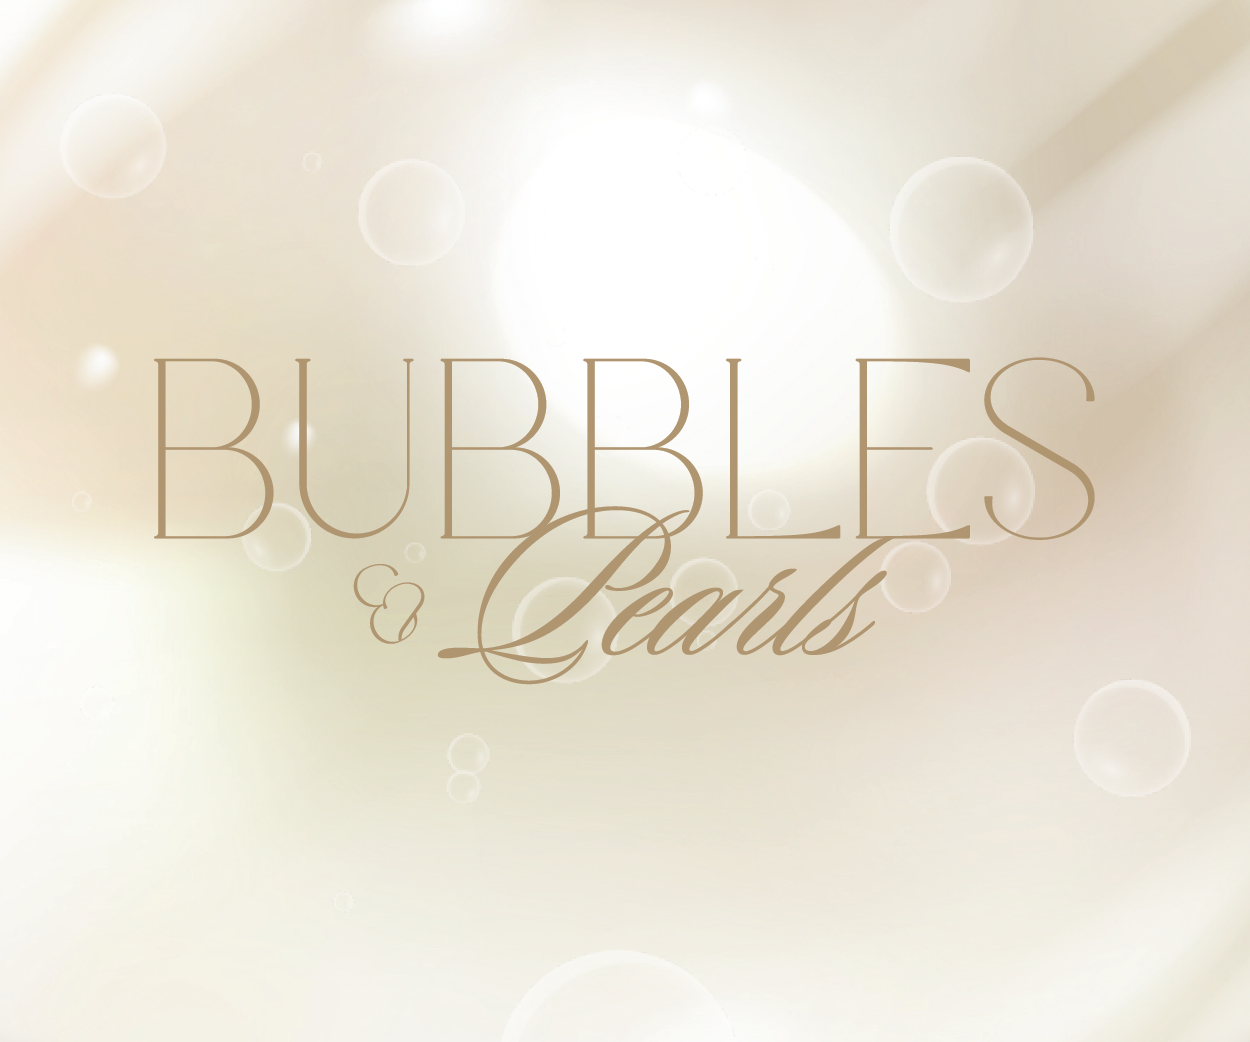 Bubbles & Pearls Vol. 2 - Champagner & Kaviar Lunch by Stefan Heilemann @Widder Garden